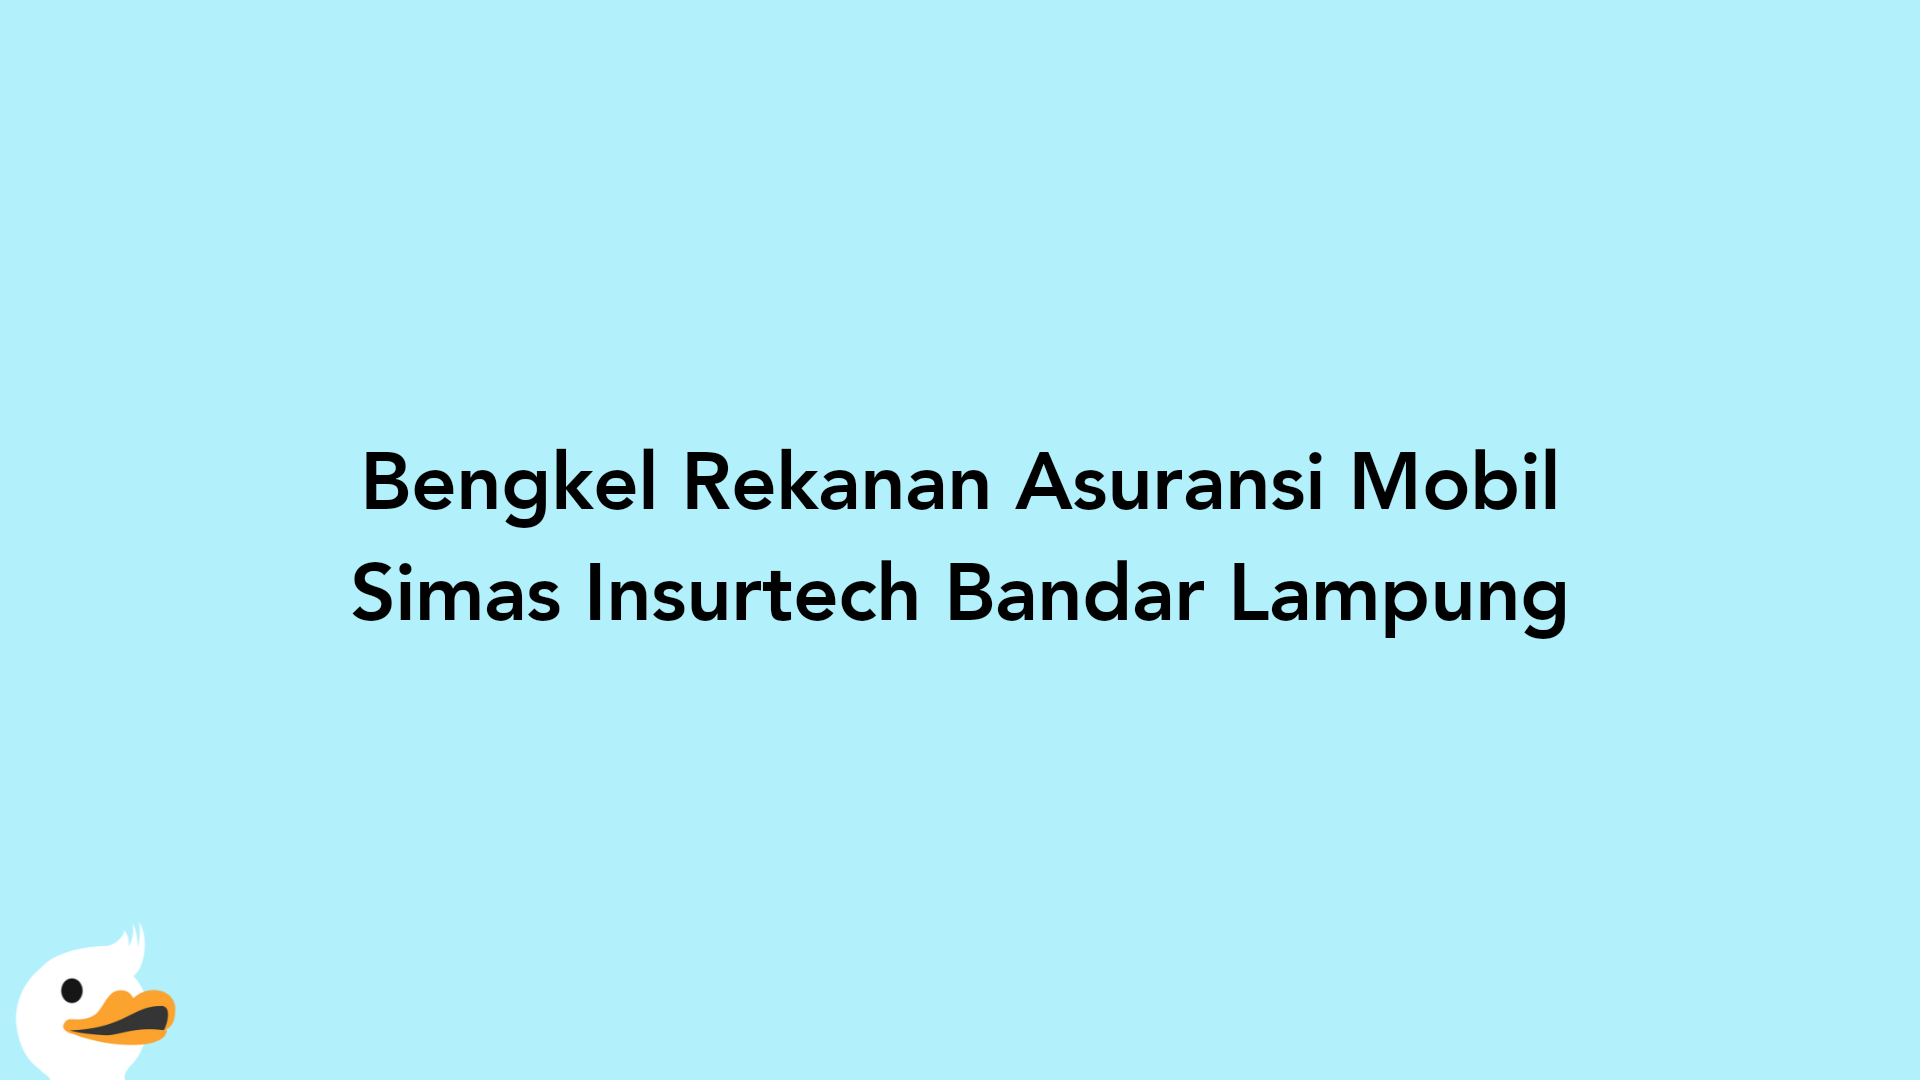 Bengkel Rekanan Asuransi Mobil Simas Insurtech Bandar Lampung